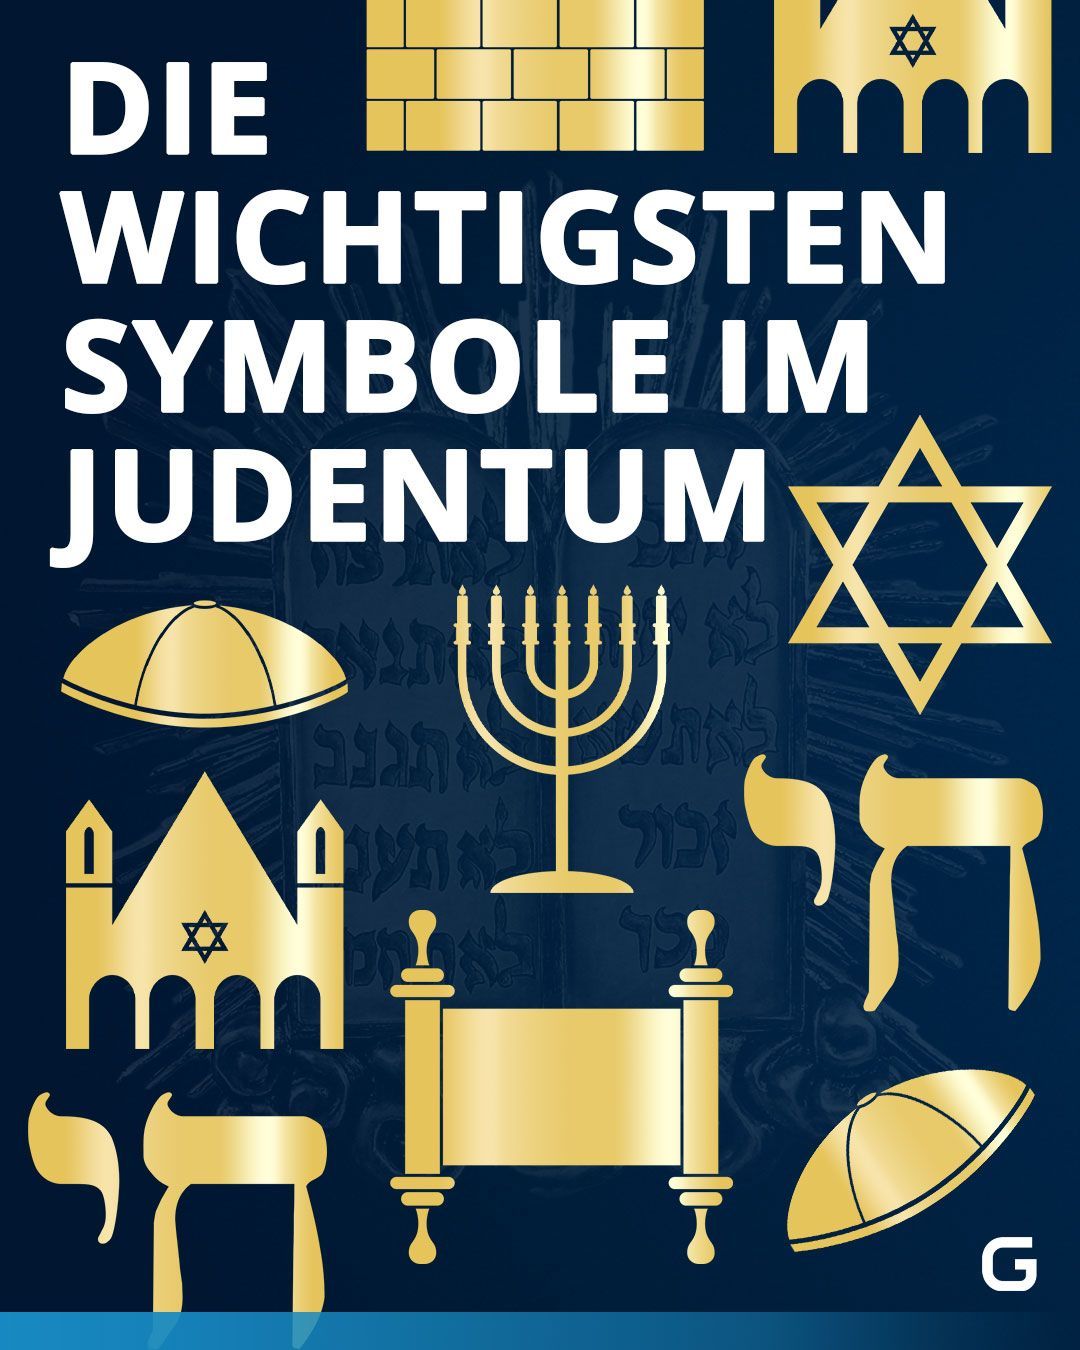 Die wichtigsten Symbole im Judentum